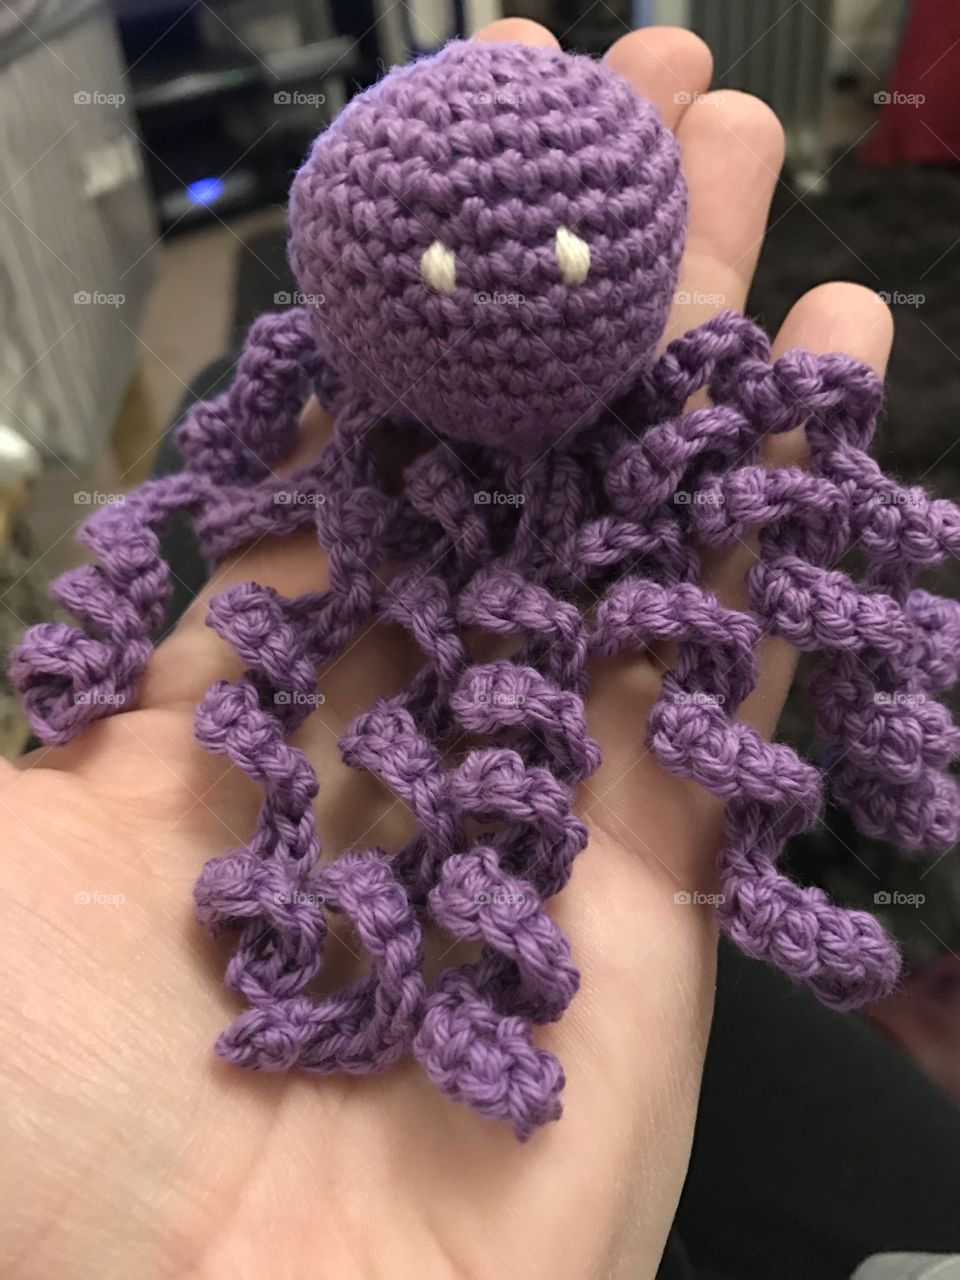 Crochet octopus NICU babies